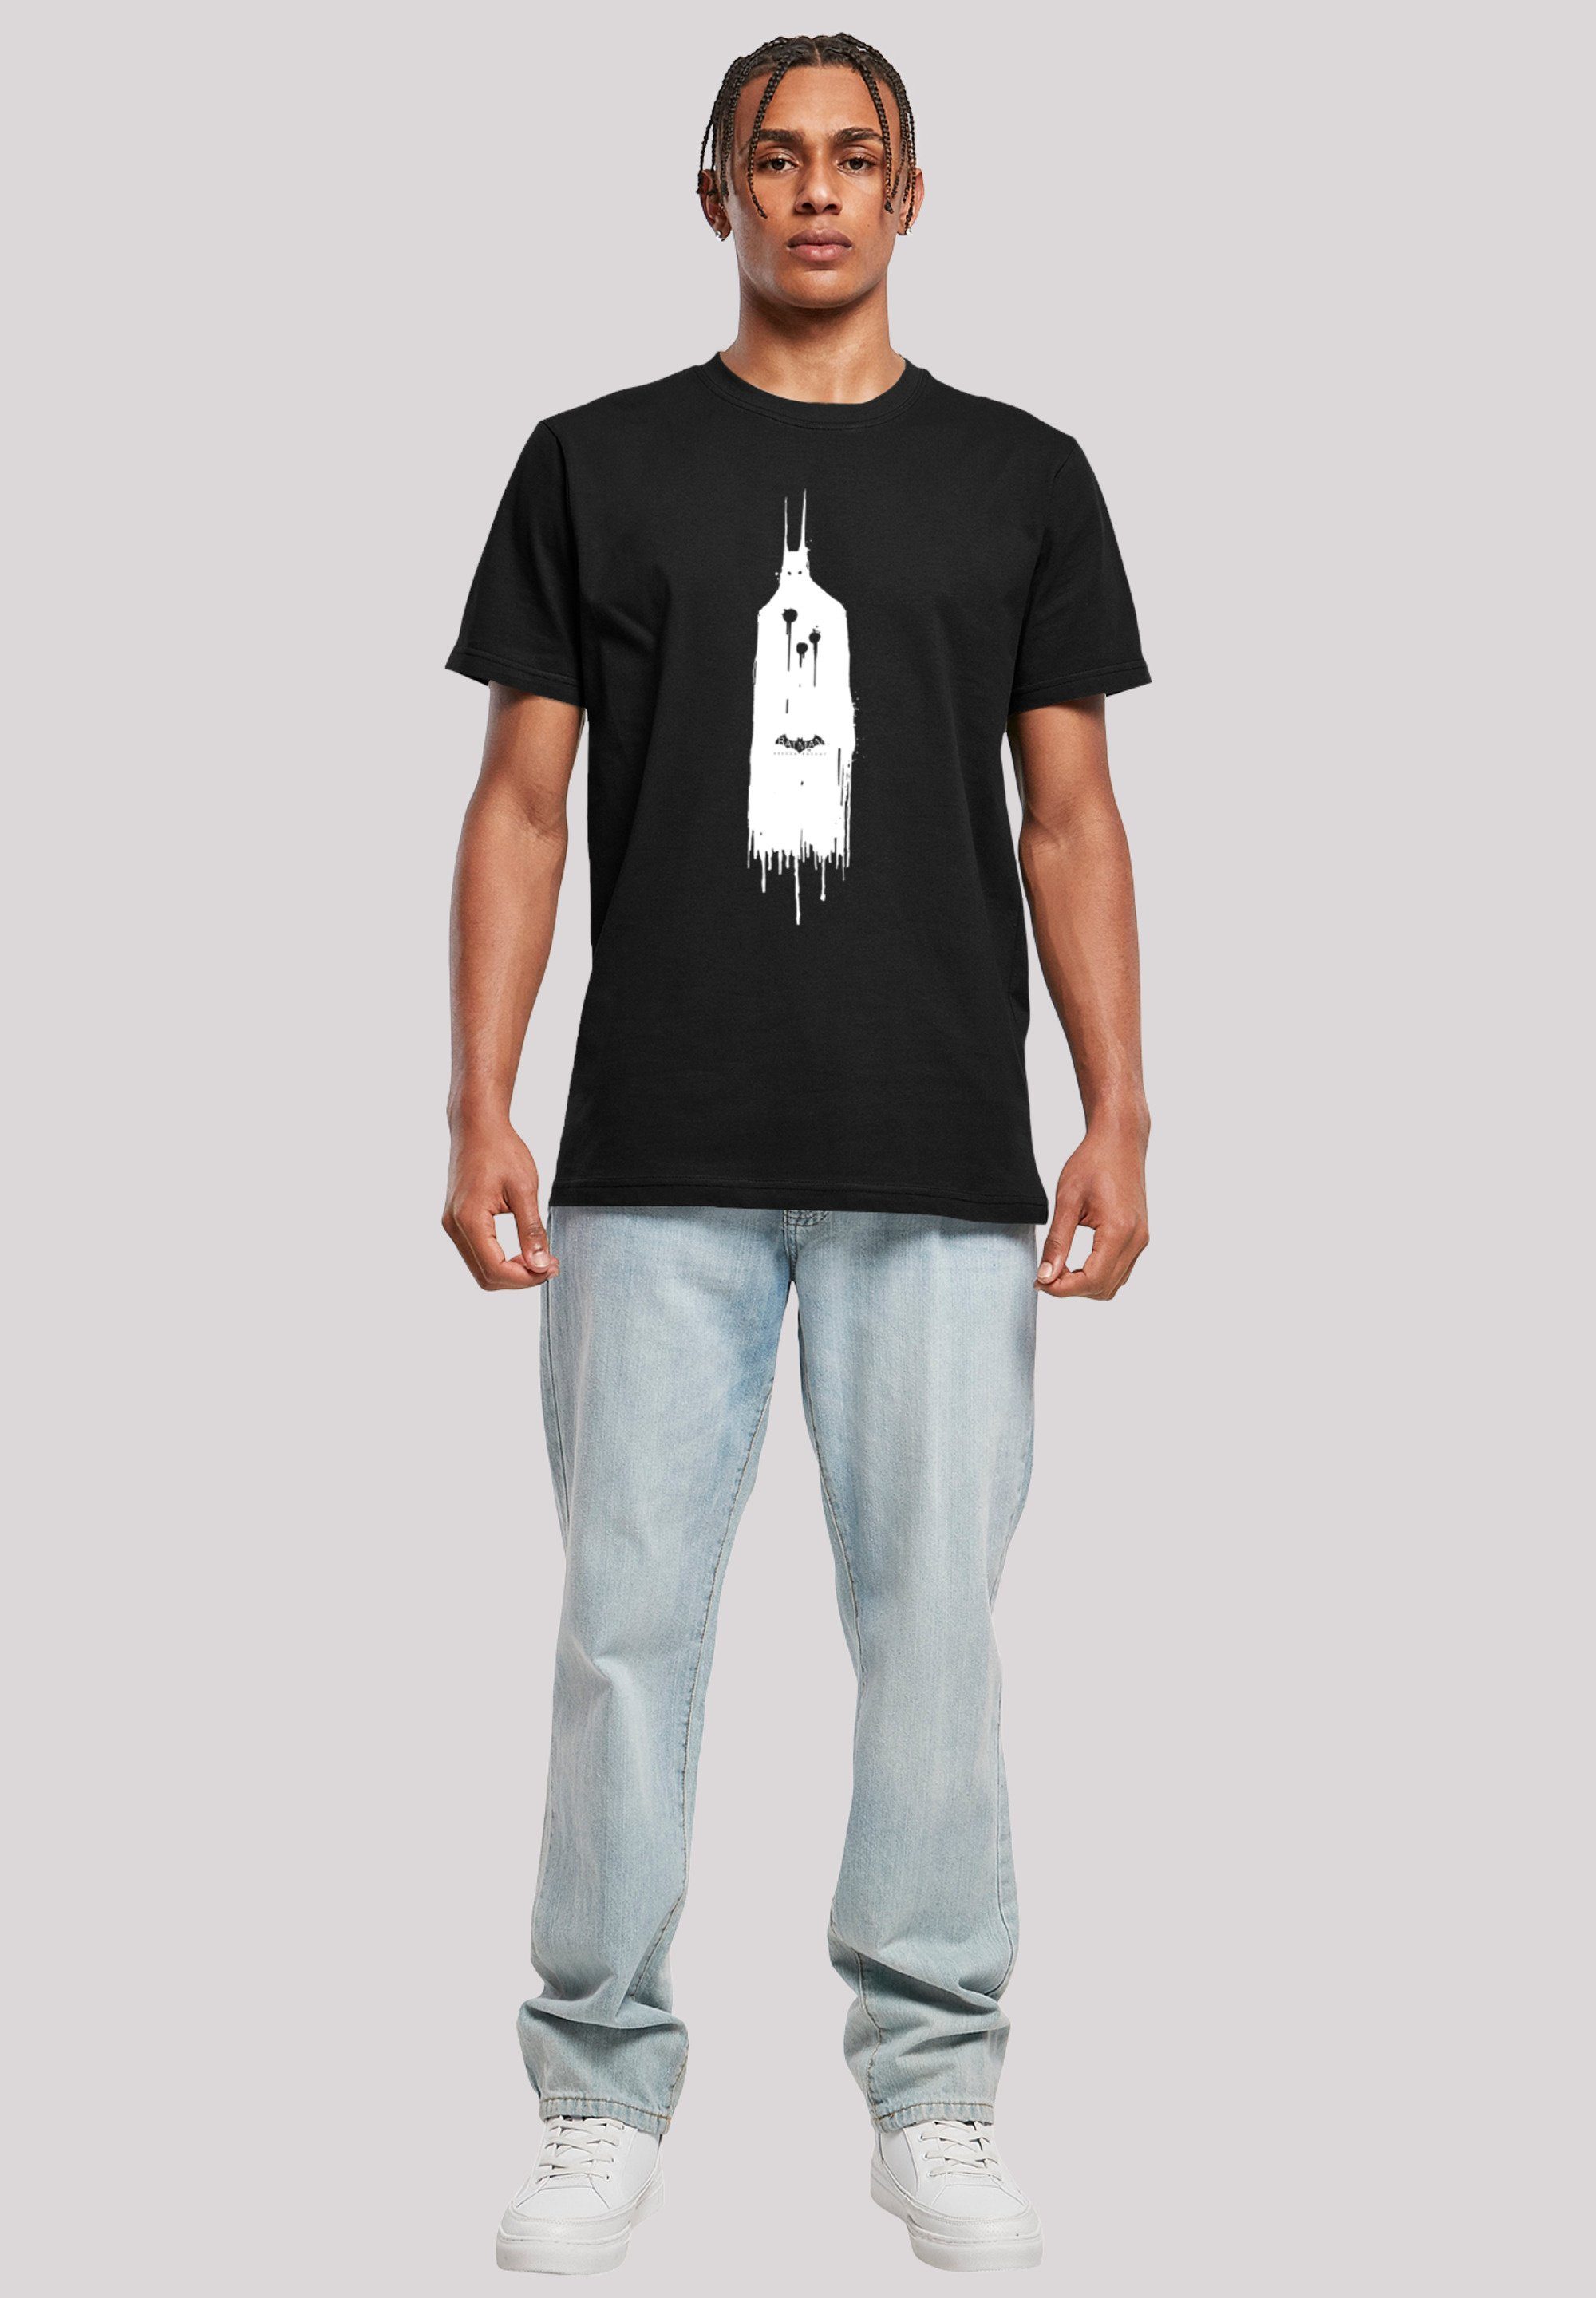 Comics Knight T-Shirt DC Print Arkham F4NT4STIC Ghost Batman